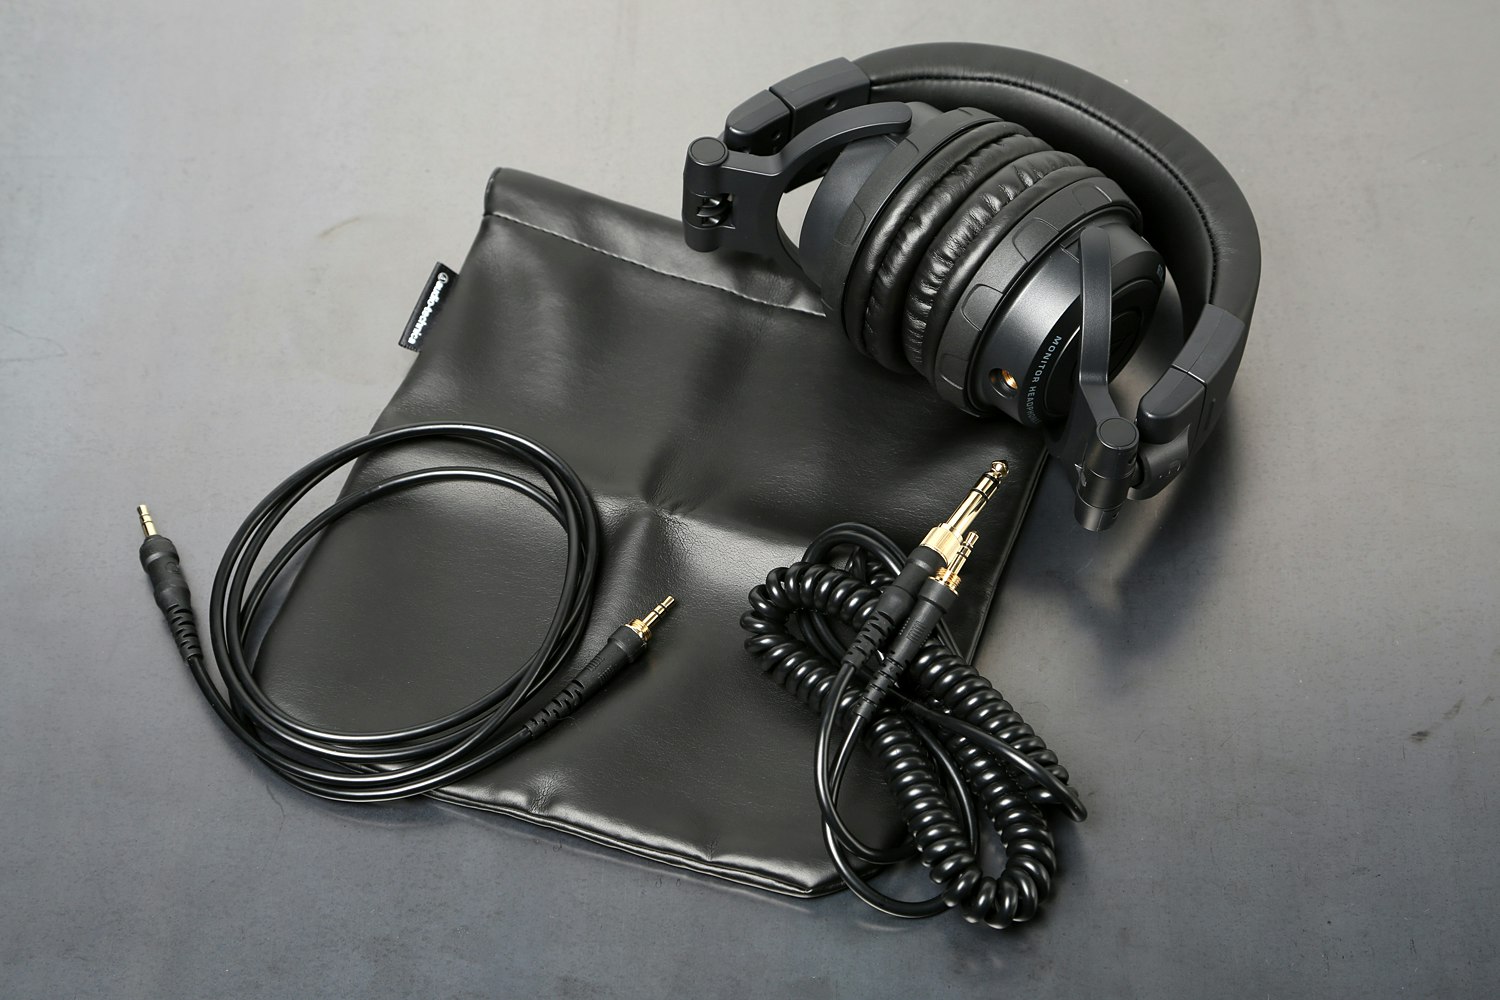 Audio-Technica ATH-Pro500MK2 | Audiophile | Drop